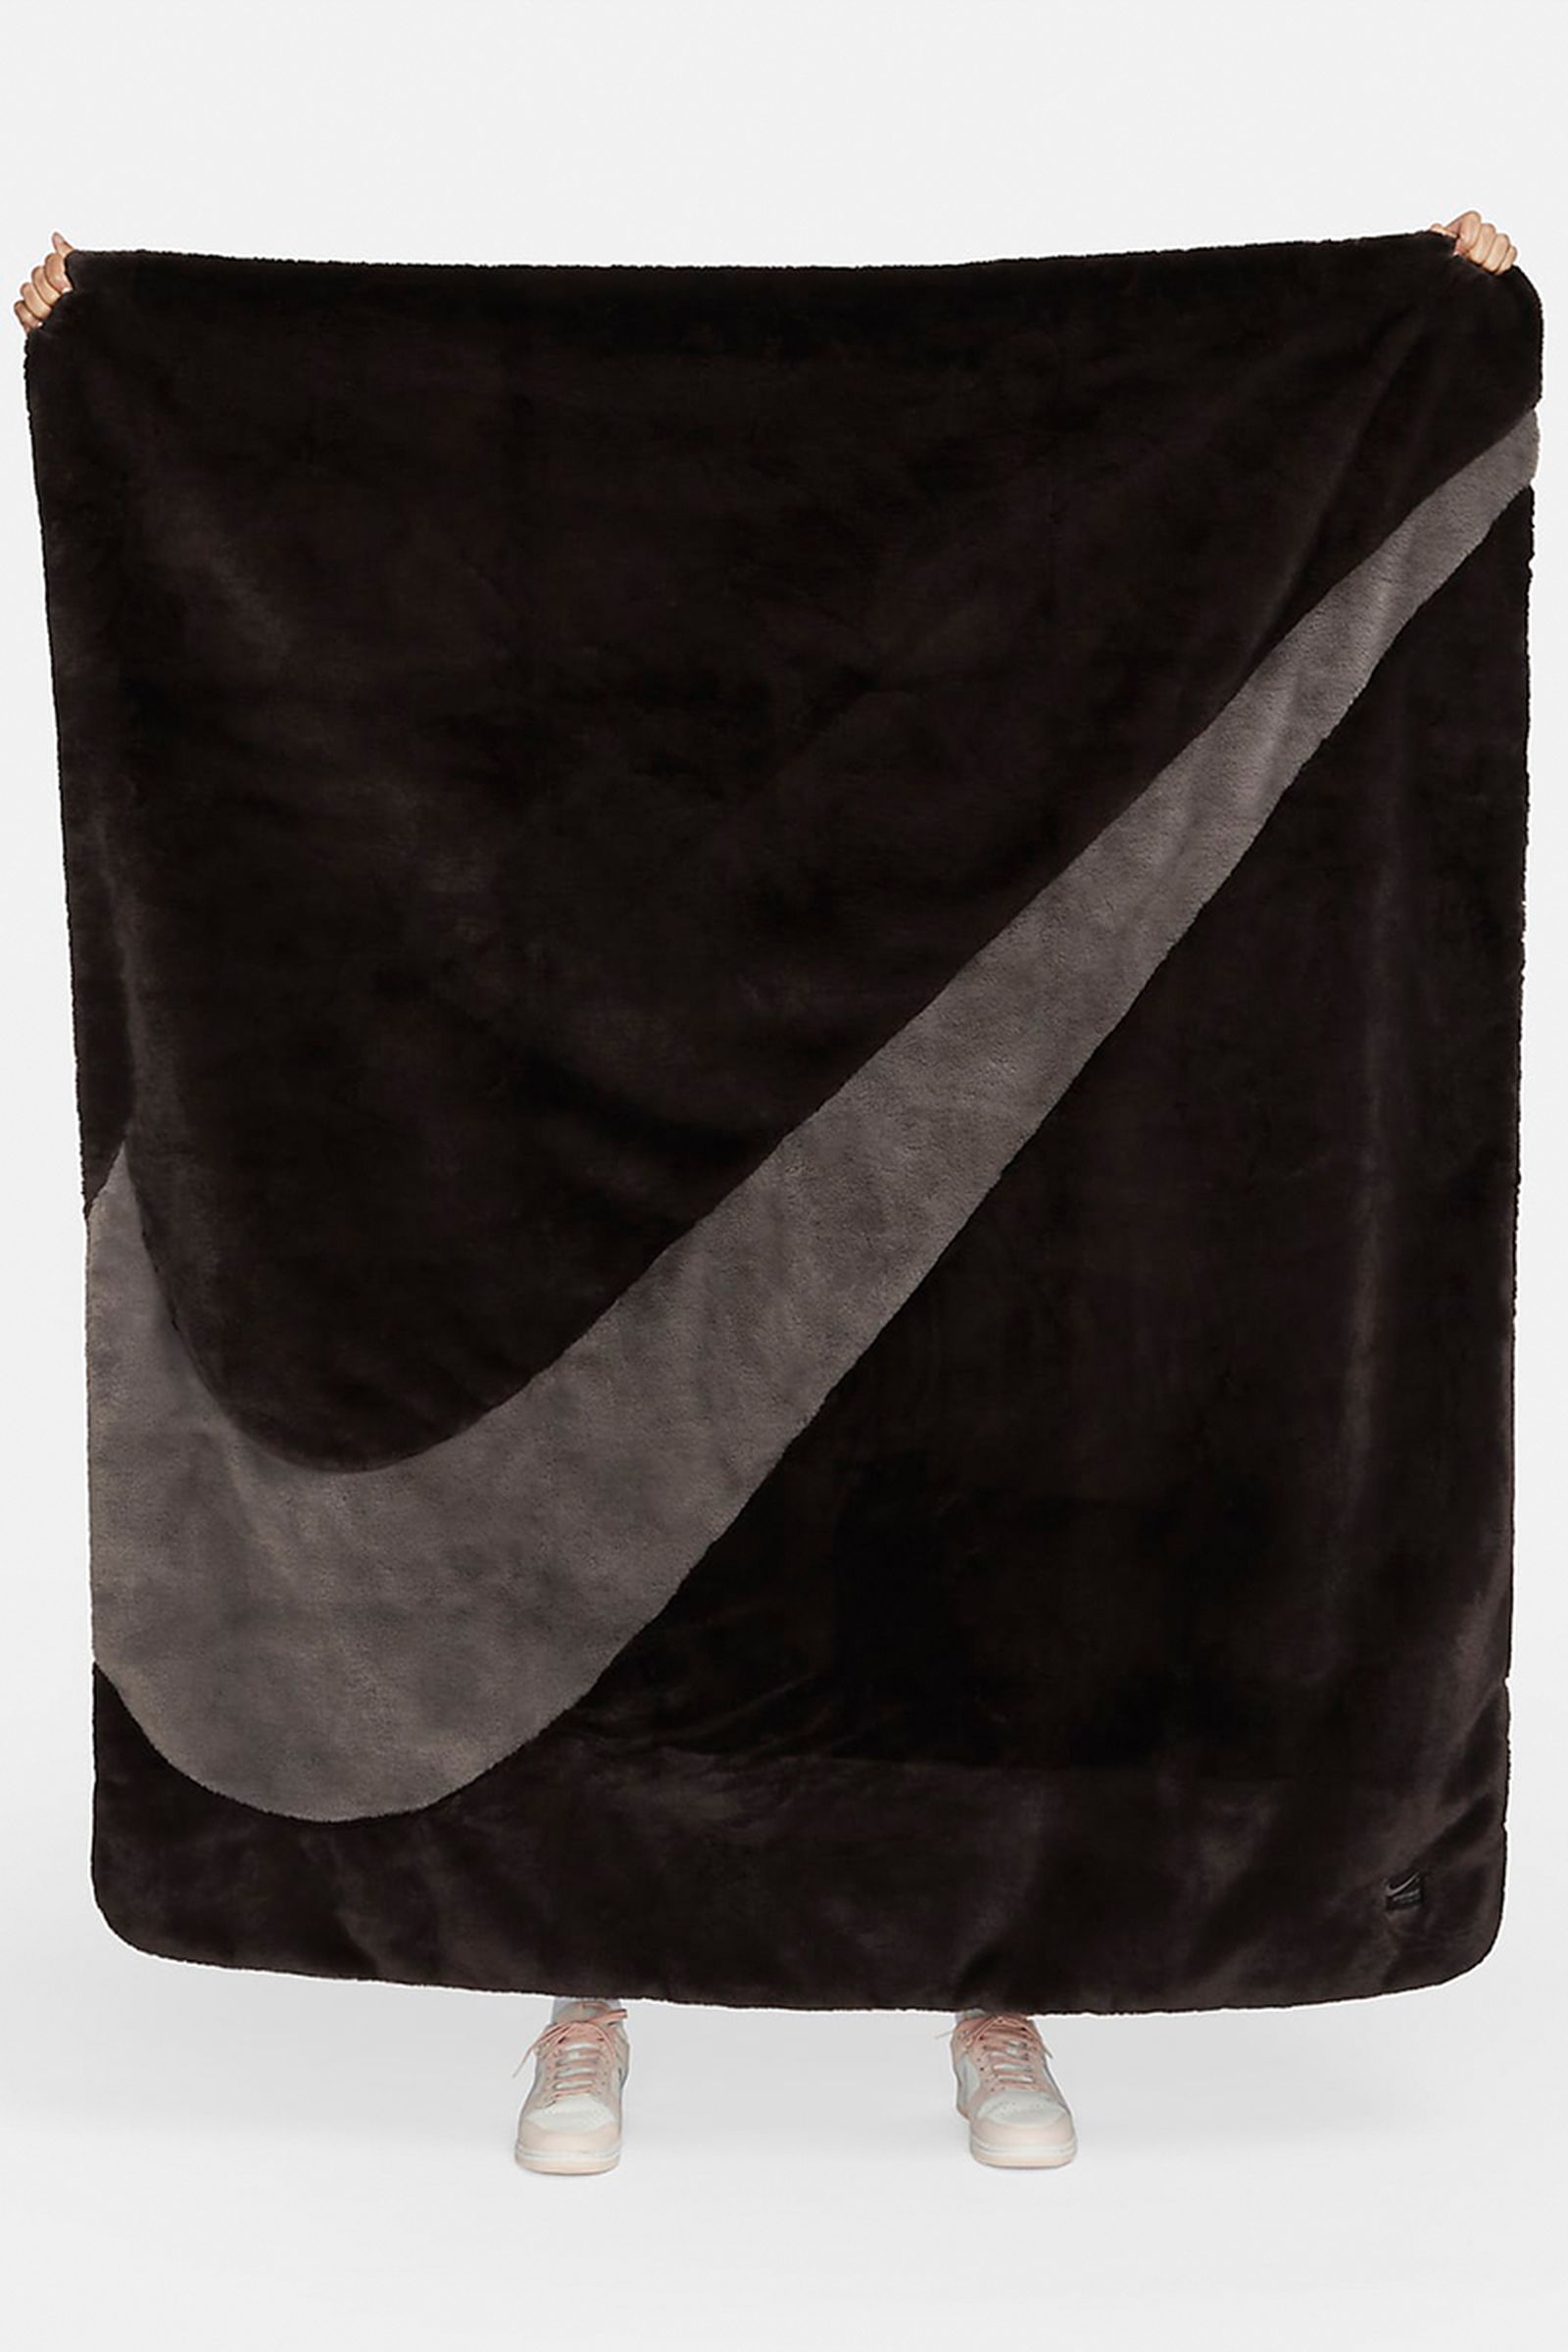 Nike's Faux Fur Swoosh Blankets are Cozy Season Certified